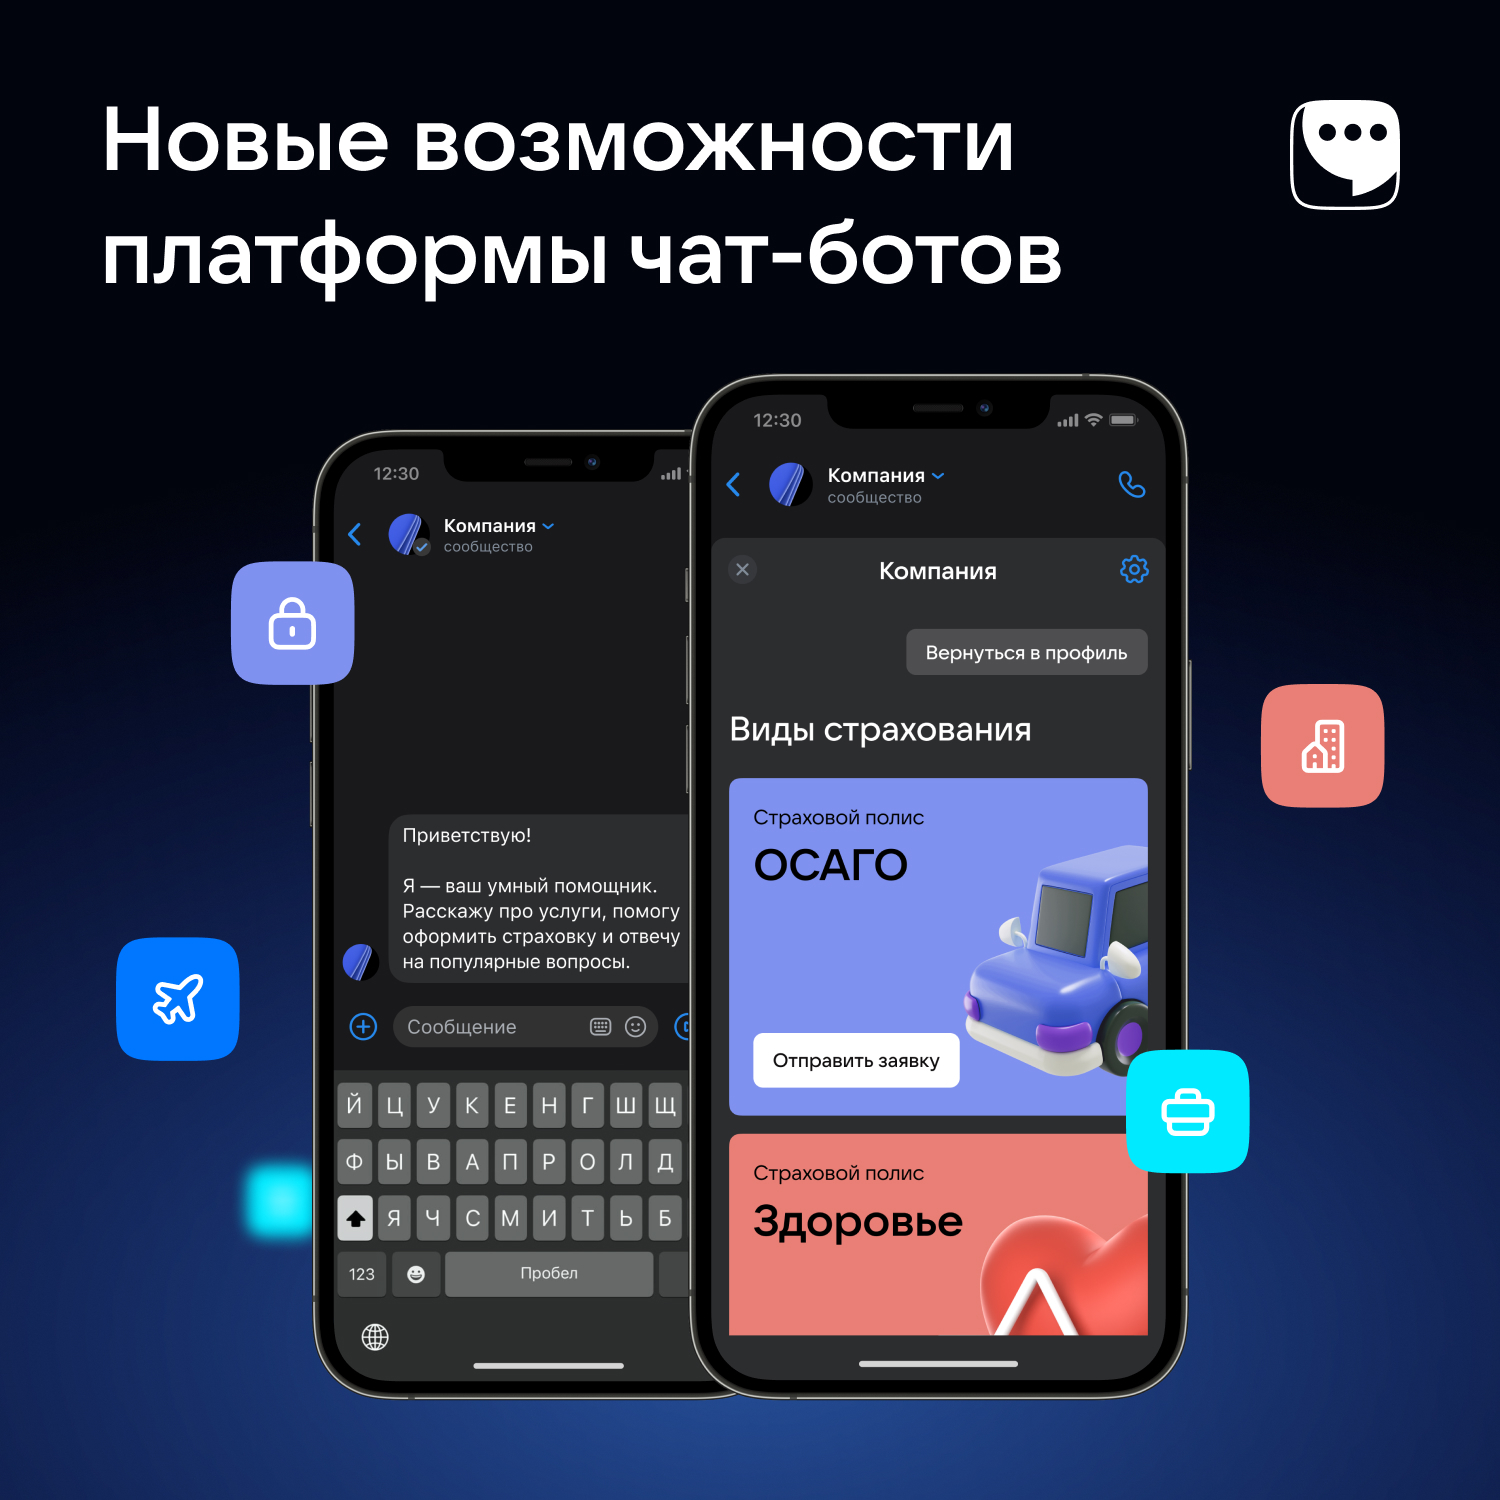 ВКонтакте» провела апгрейд чат-ботов в «VK мессенджере», расширив их  возможности для бизнеса / ServerNews